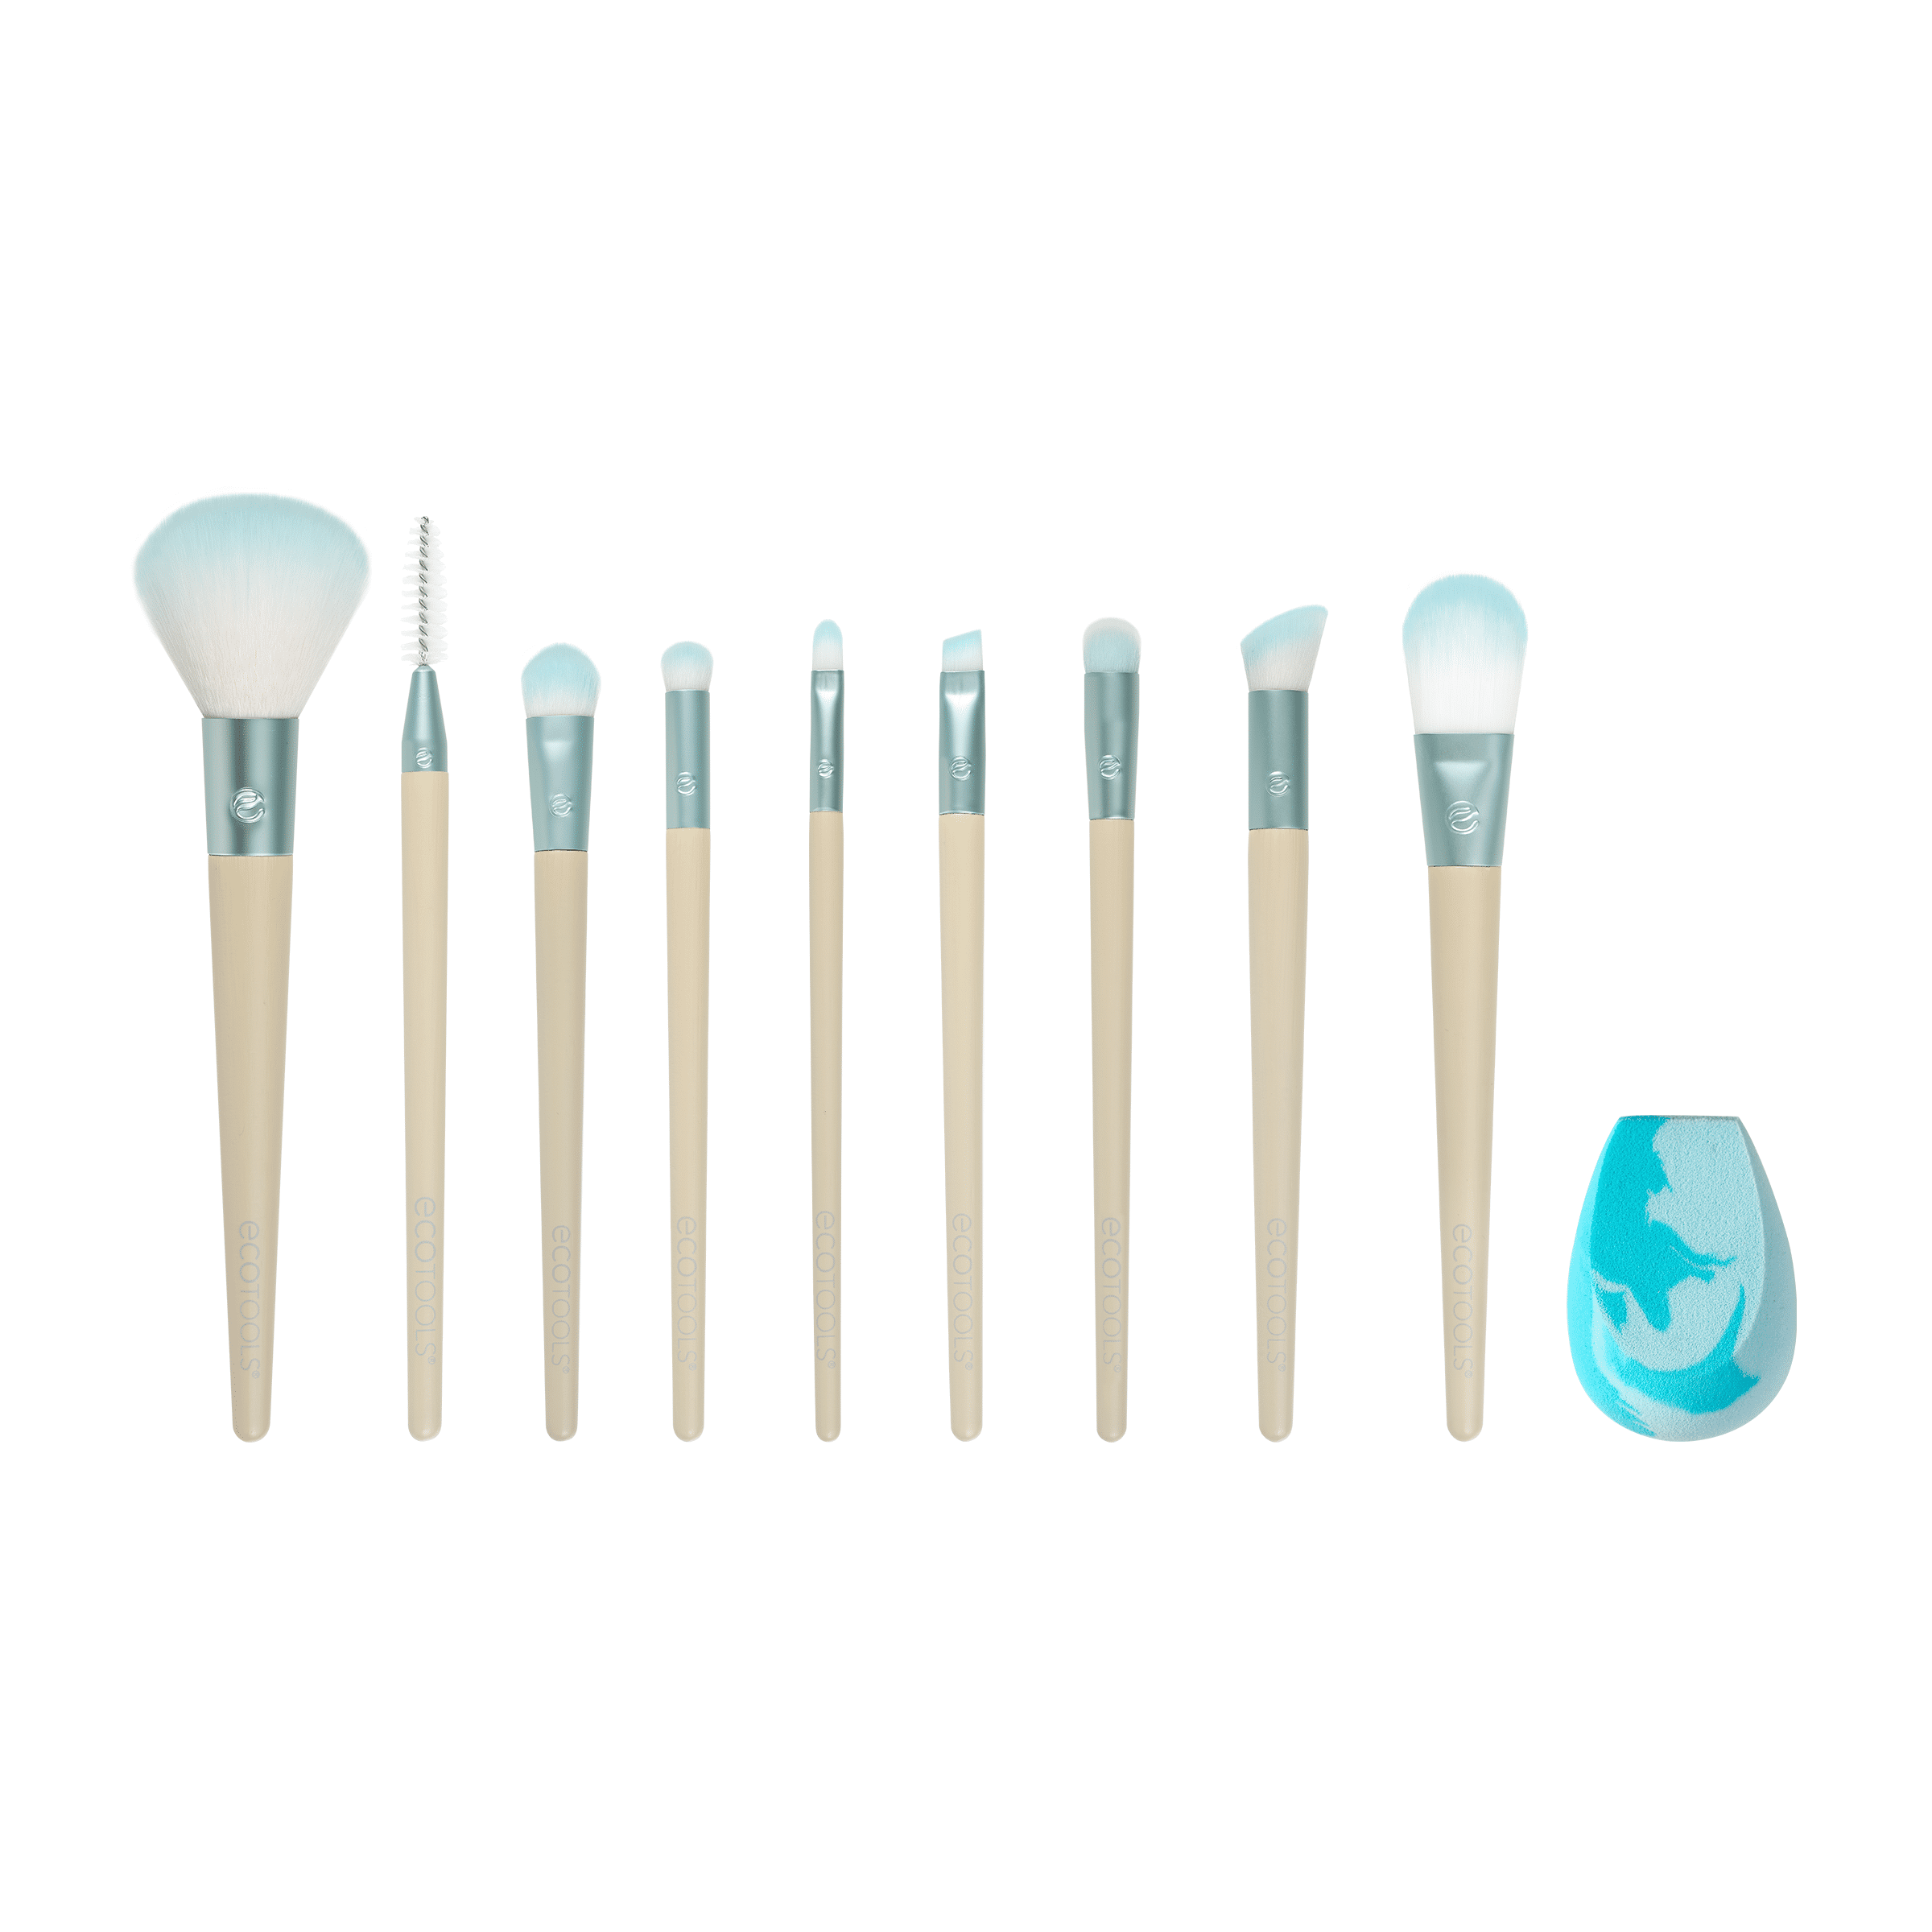 Life Changing Blending Brushes - 10-piece set